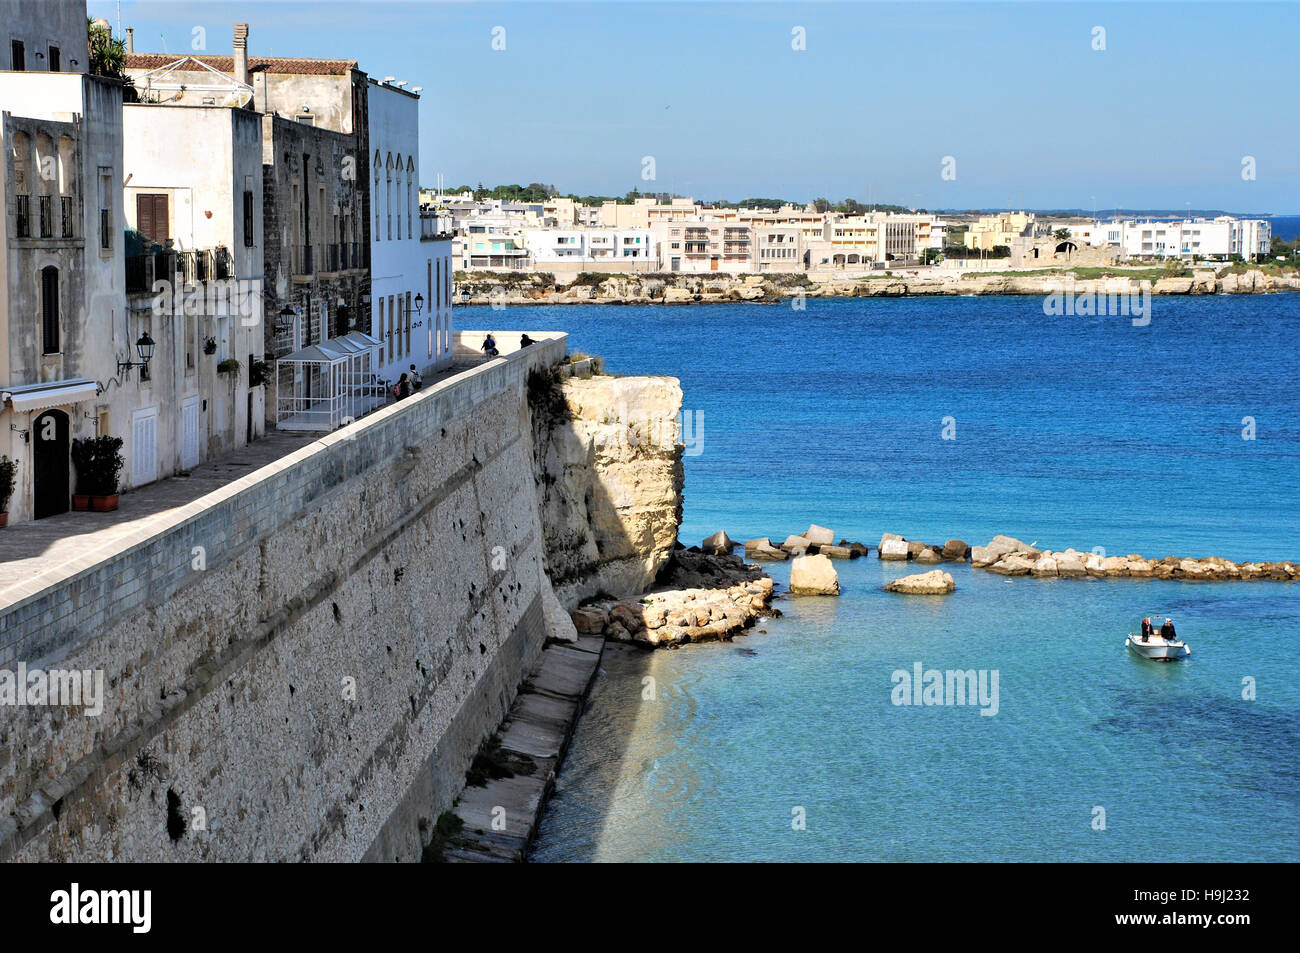 Otranto,Italy Stock Photo